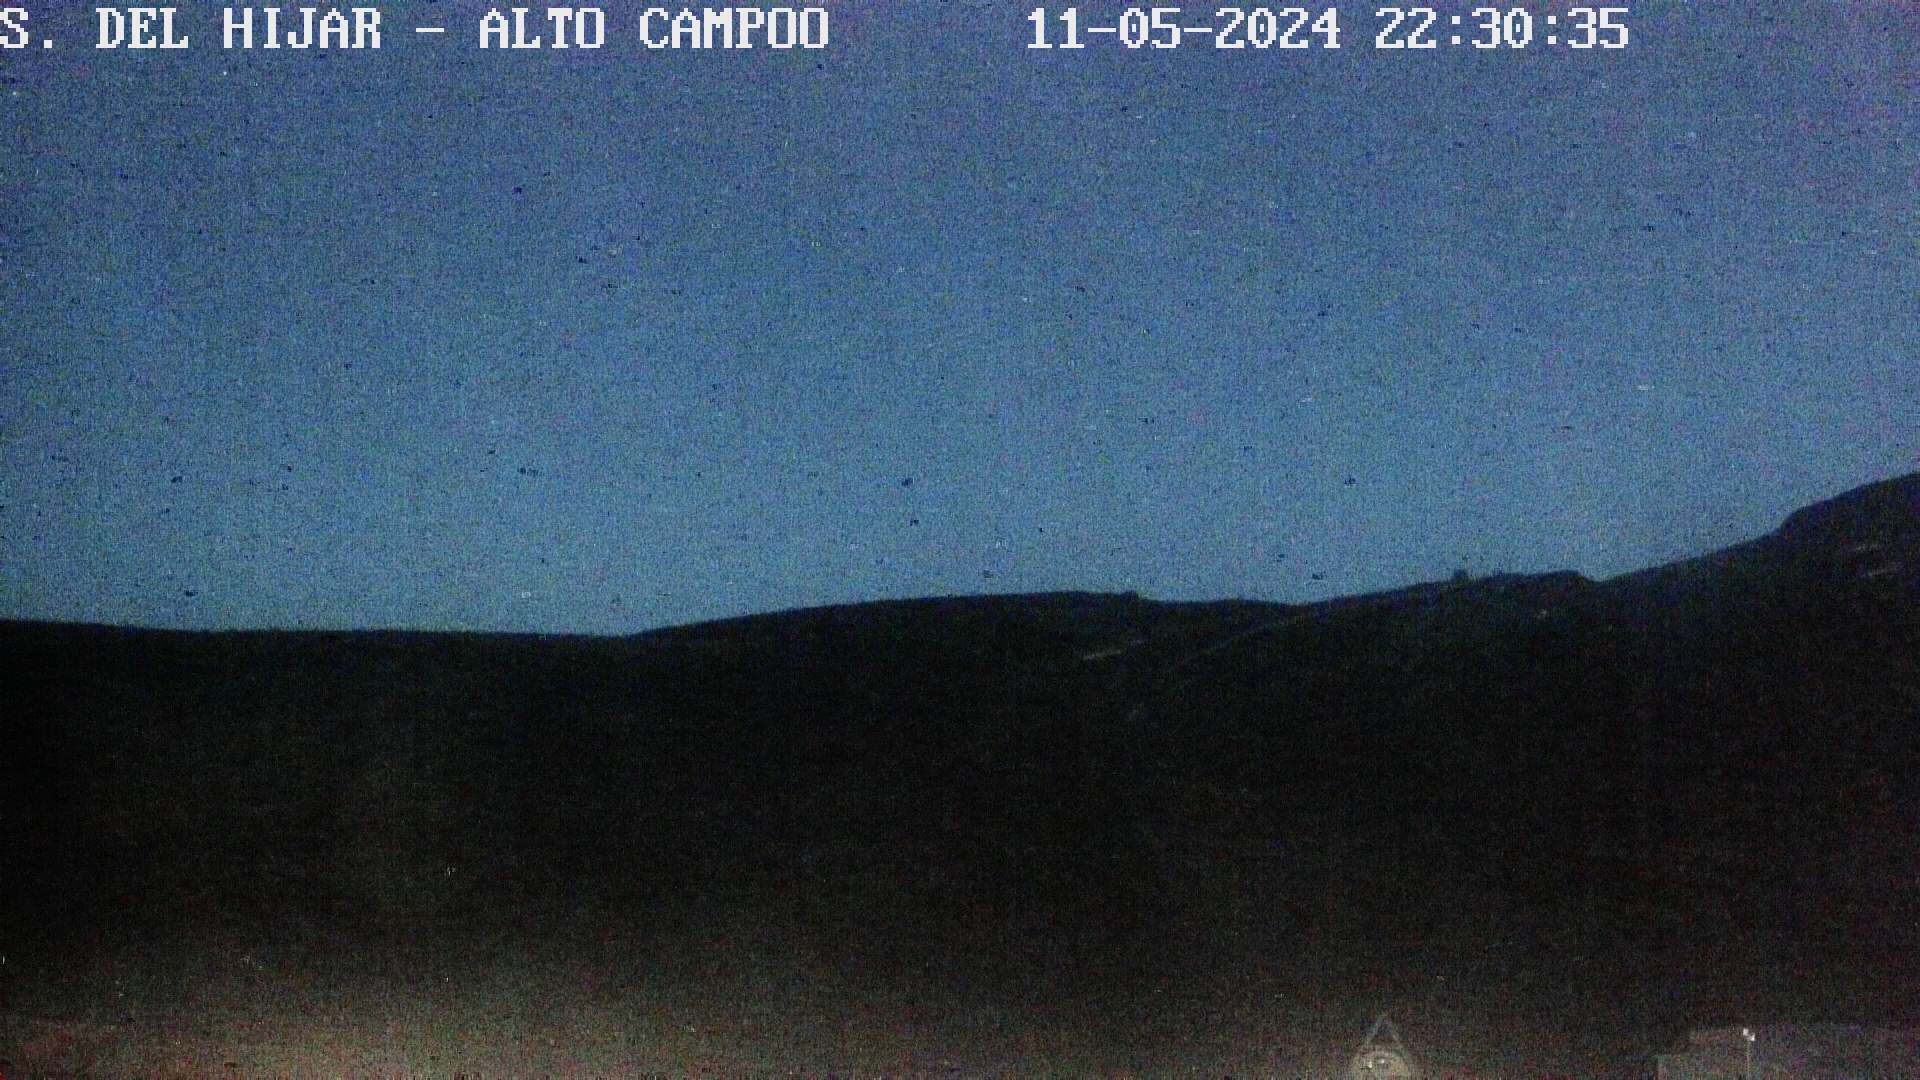 Webcam Alto Campoo El Castro - El Cuchilln